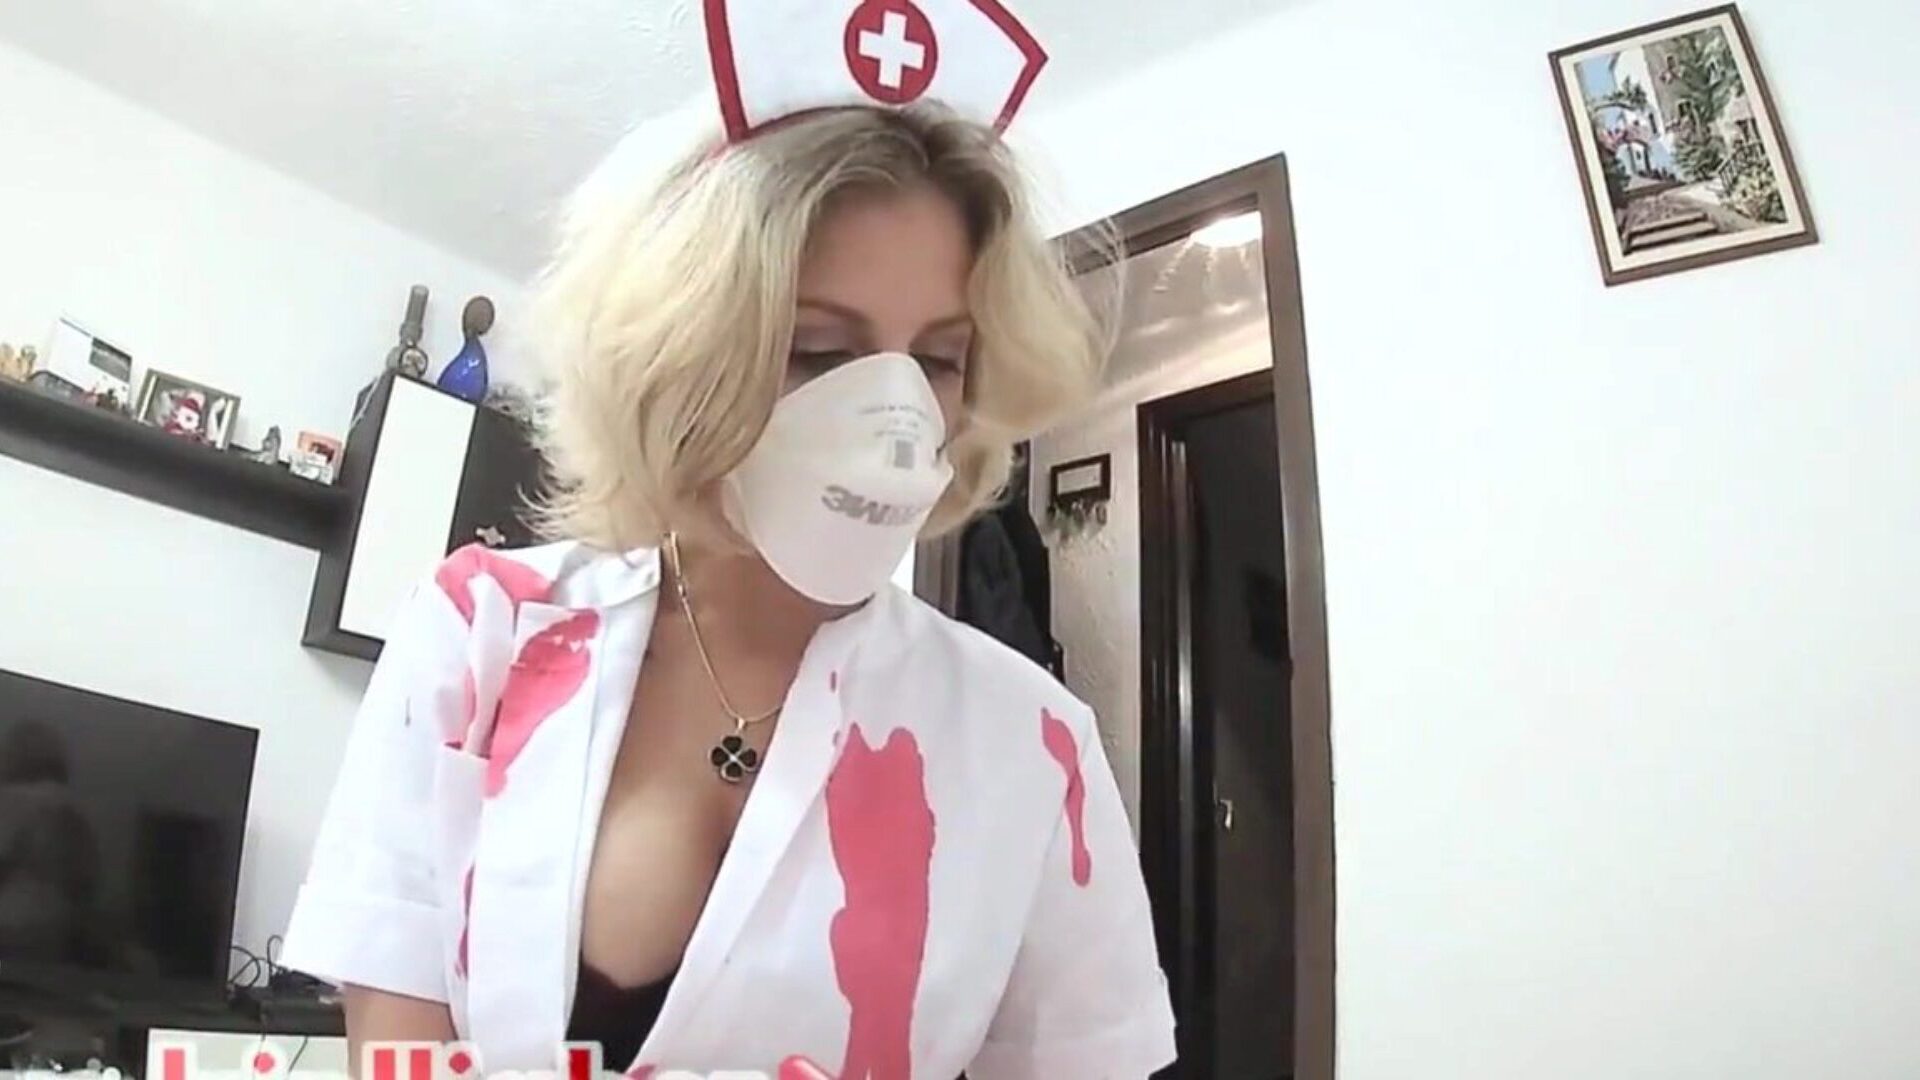 Jag knullade sjuksköterskan under karantän med creampie